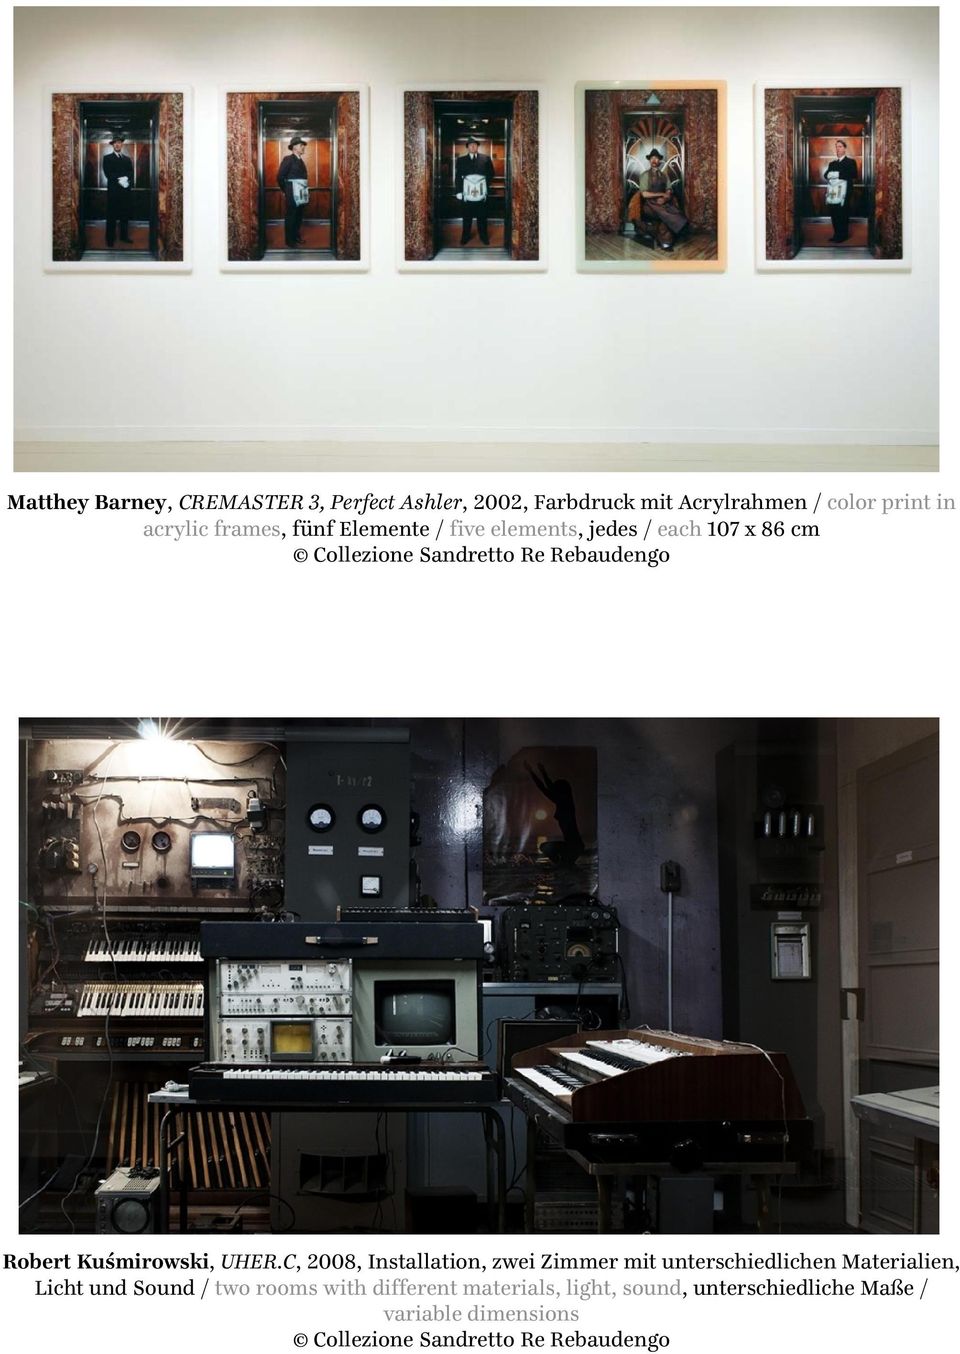 UHER.C, 2008, Installation, zwei Zimmer mit unterschiedlichen Materialien, Licht und Sound / two rooms with